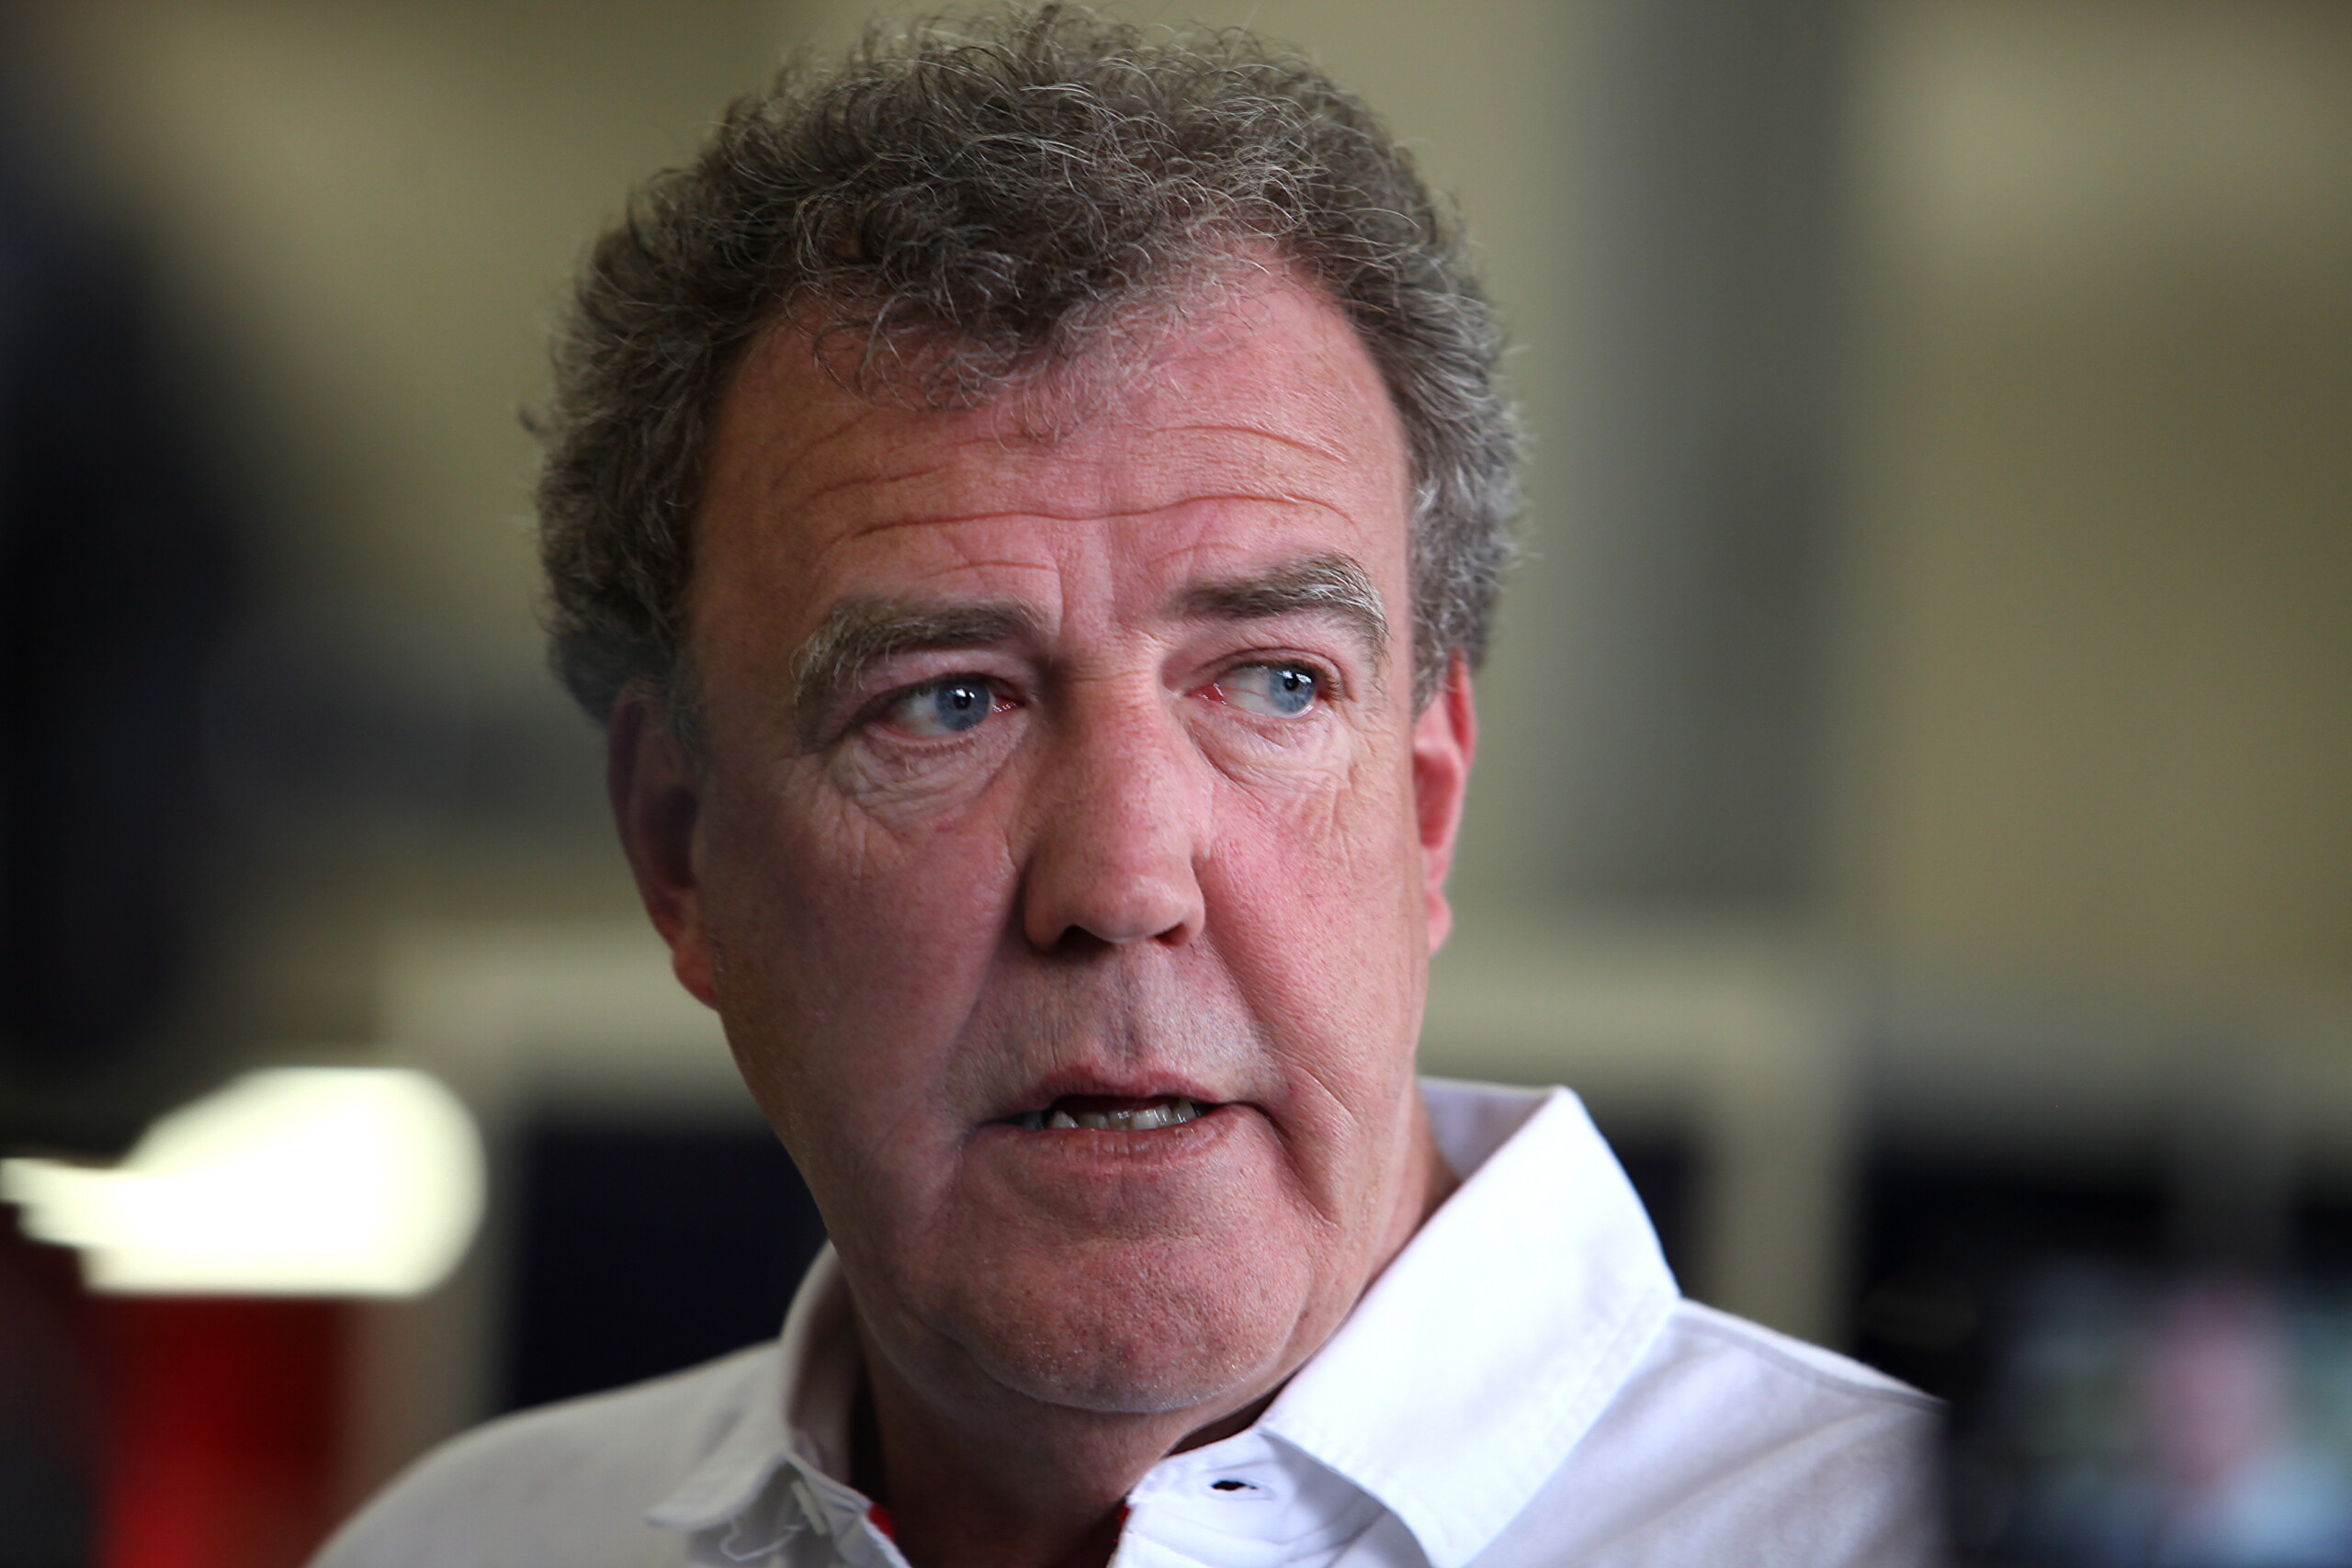 Jeremy Clarkson pobity, związany i oblany moczem podczas urlopu – co się stało?